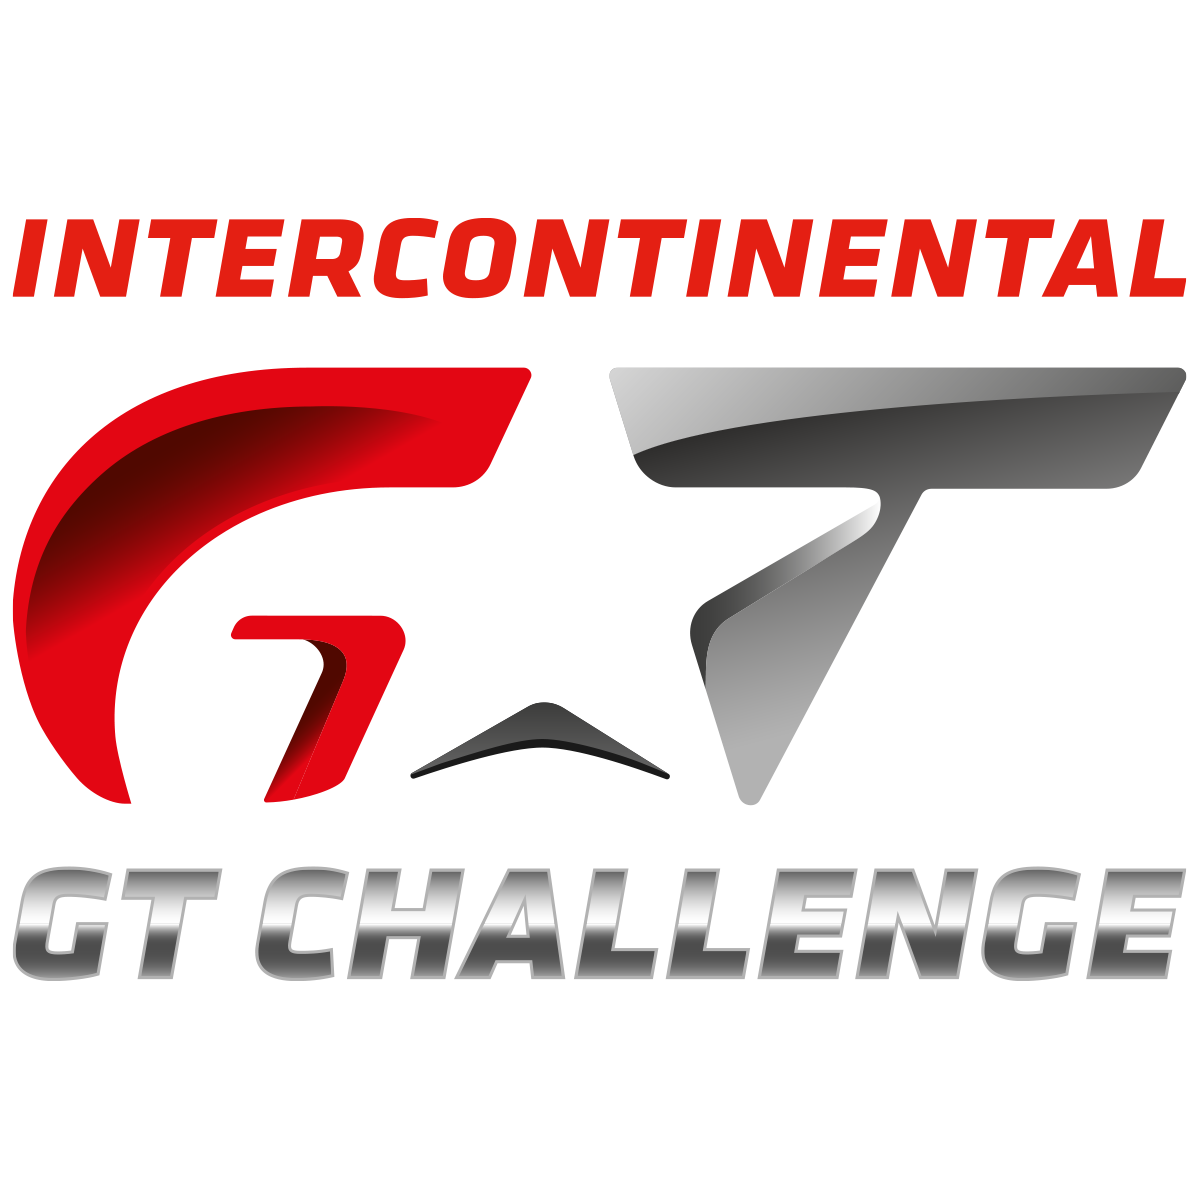 Intercontinental GT Challenge